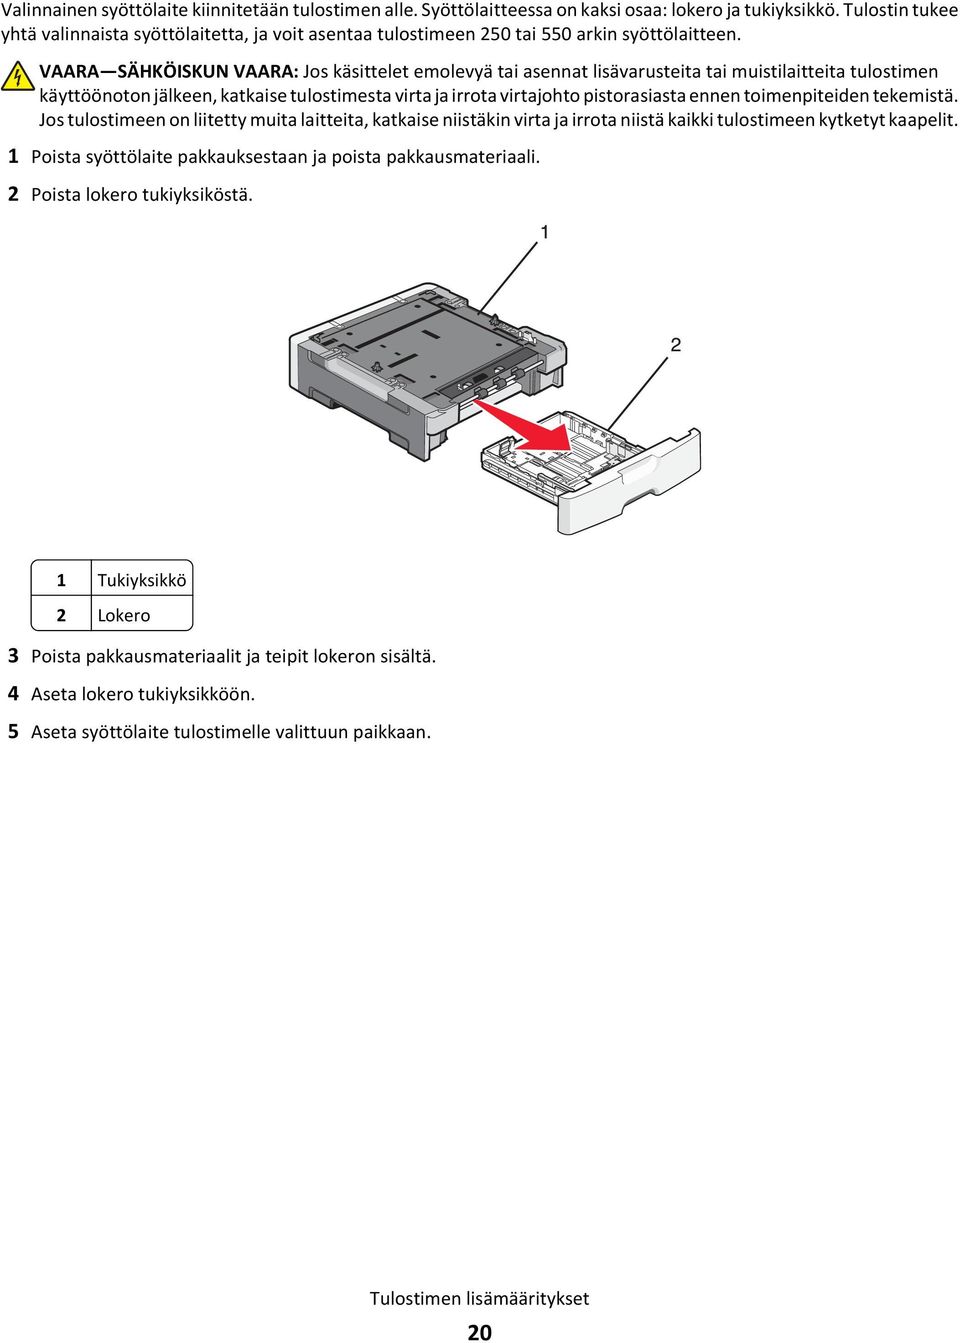 VAARA SÄHKÖISKUN VAARA: Jos käsittelet emolevyä tai asennat lisävarusteita tai muistilaitteita tulostimen käyttöönoton jälkeen, katkaise tulostimesta virta ja irrota virtajohto pistorasiasta ennen